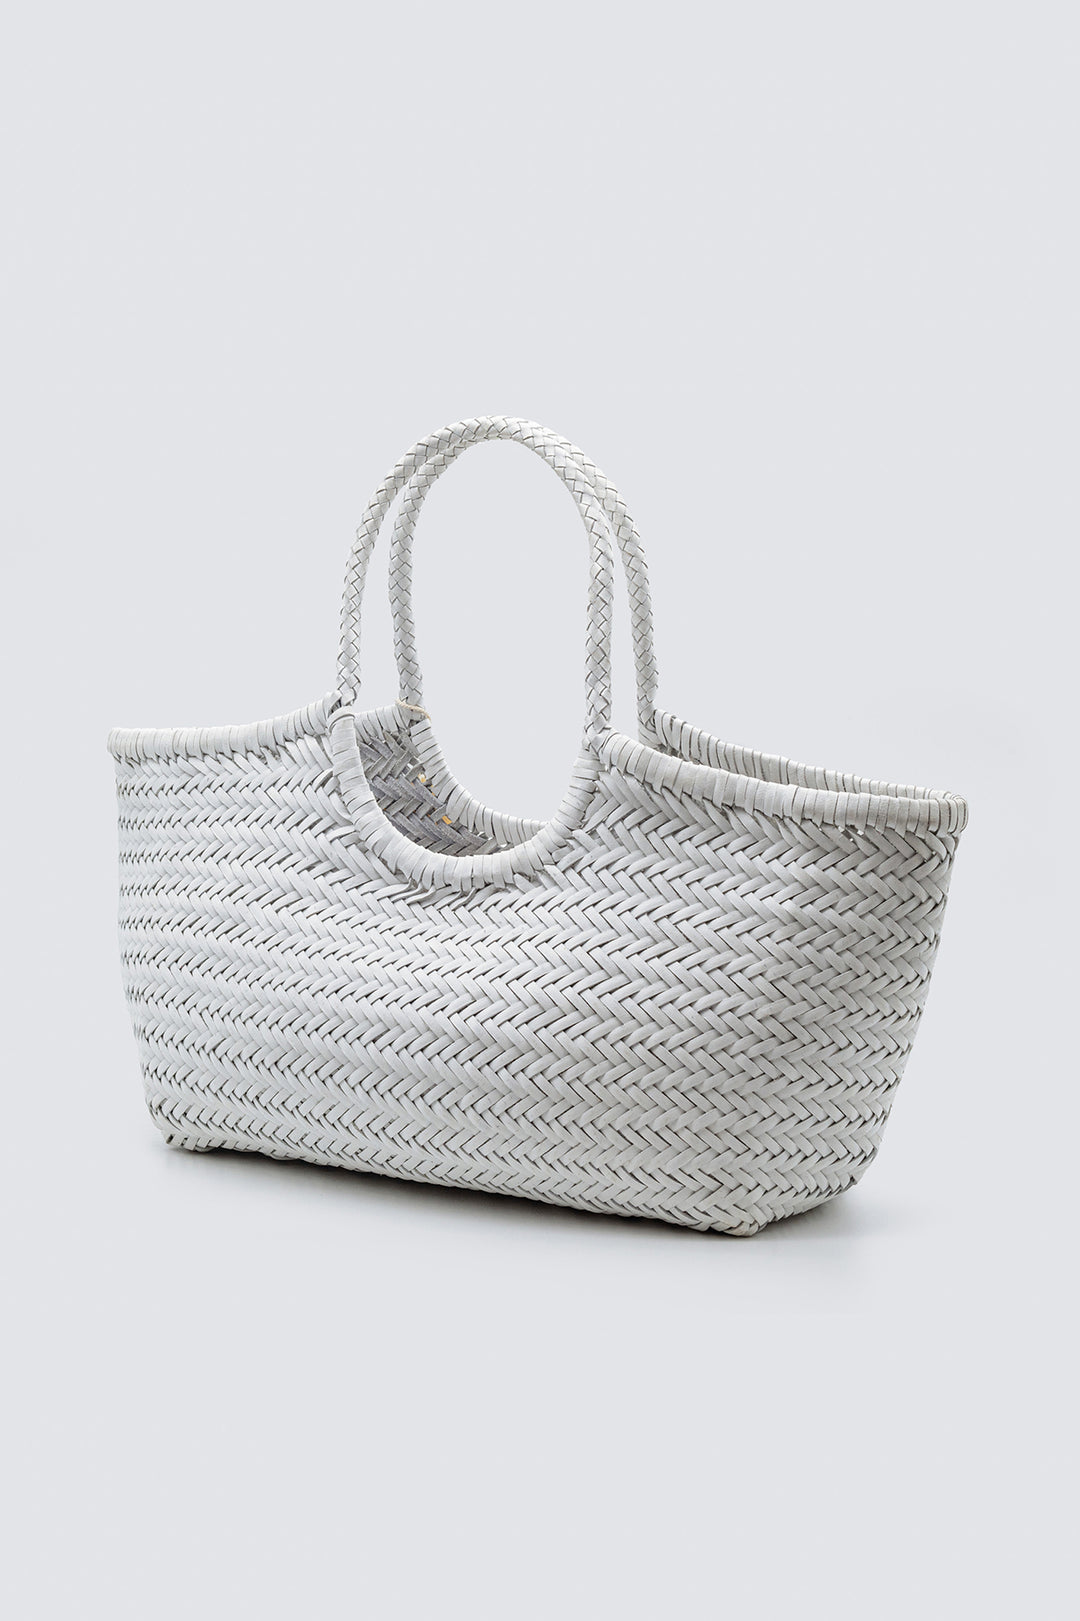 Dragon Diffusion woven leather bag handmade - Nantucket Basket Big White